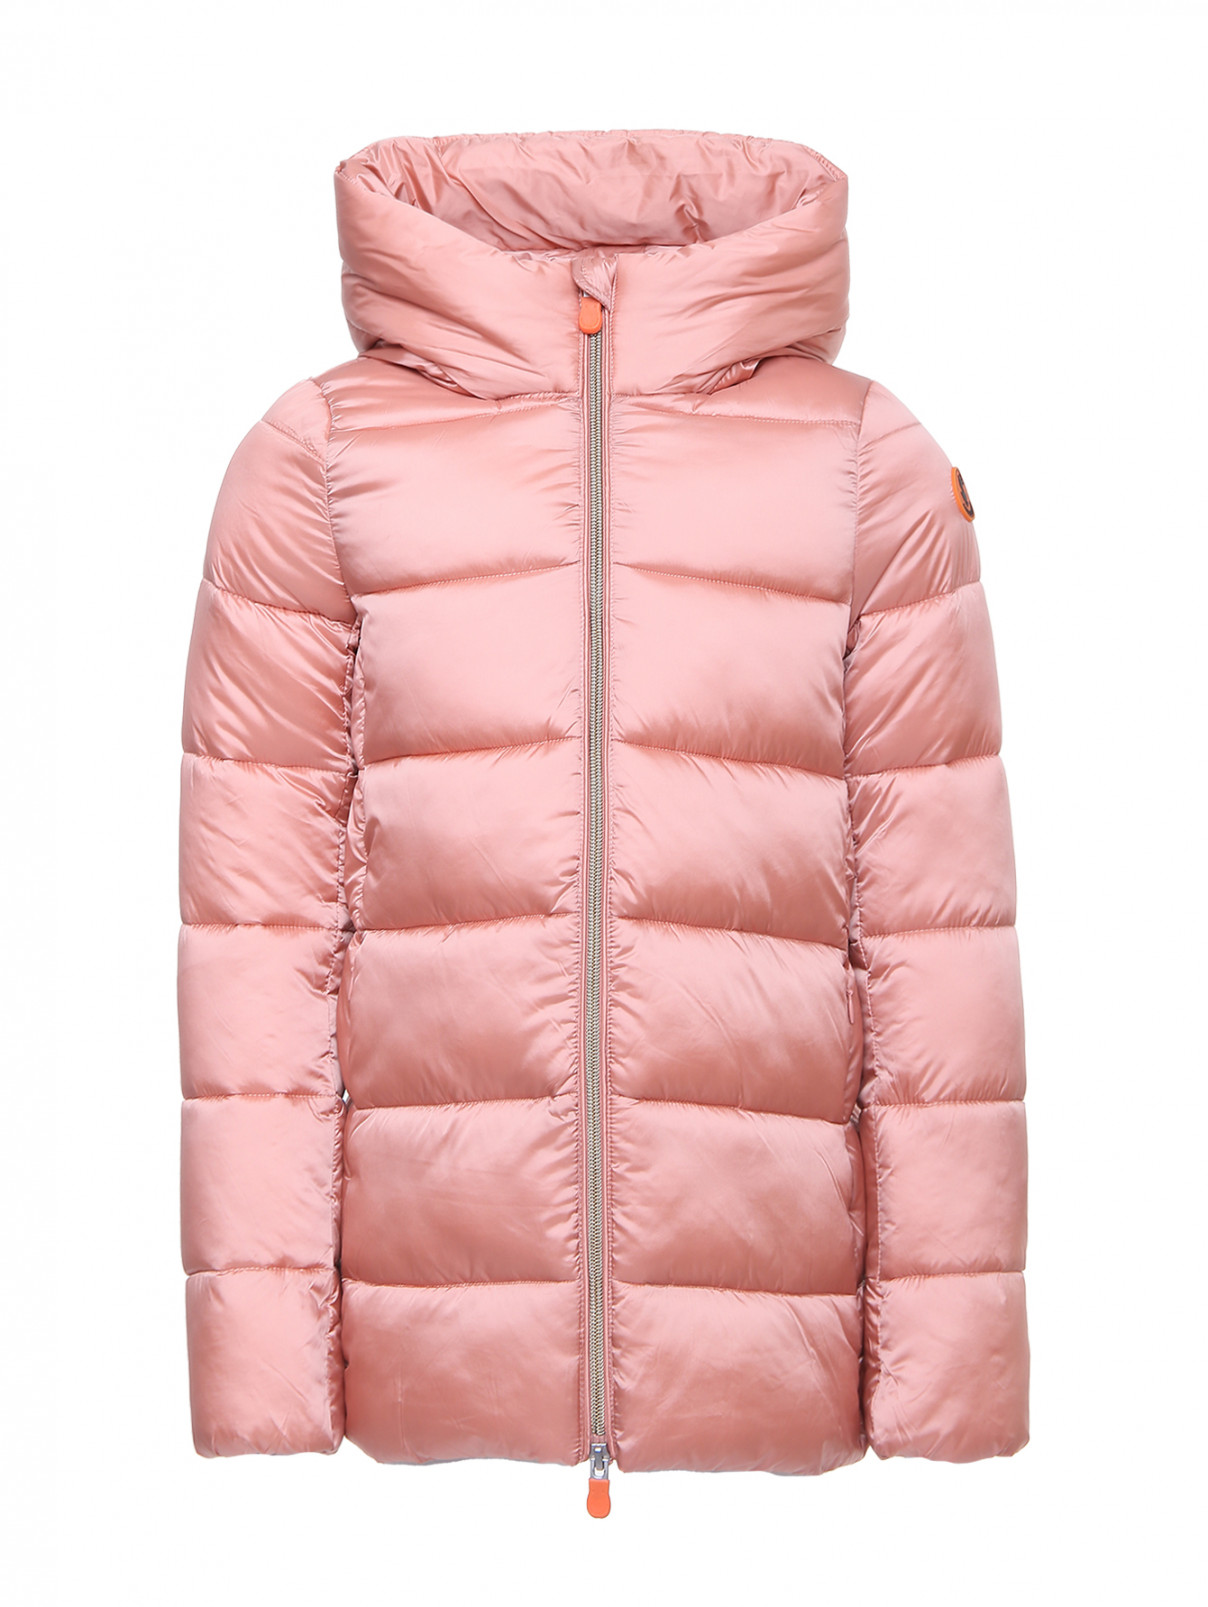 Утепленная куртка на молнии Save the Duck  –  Общий вид  – Цвет:  Розовый